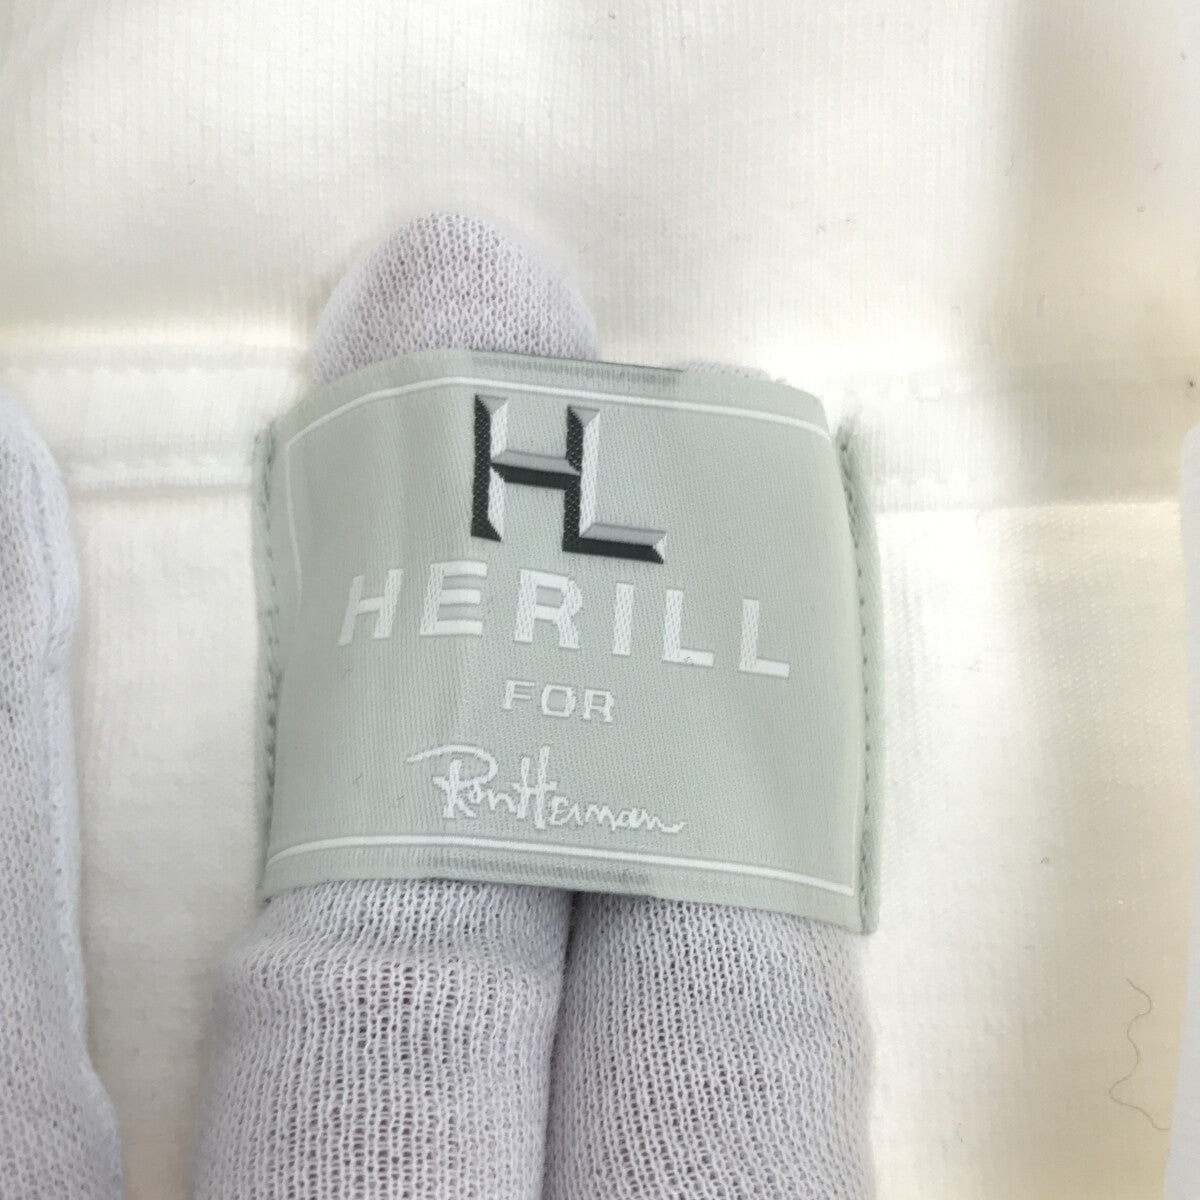 HERILL / ヘリル | Ron Herman 別注 タートルネックカットソー | 0 | レディース – KLD